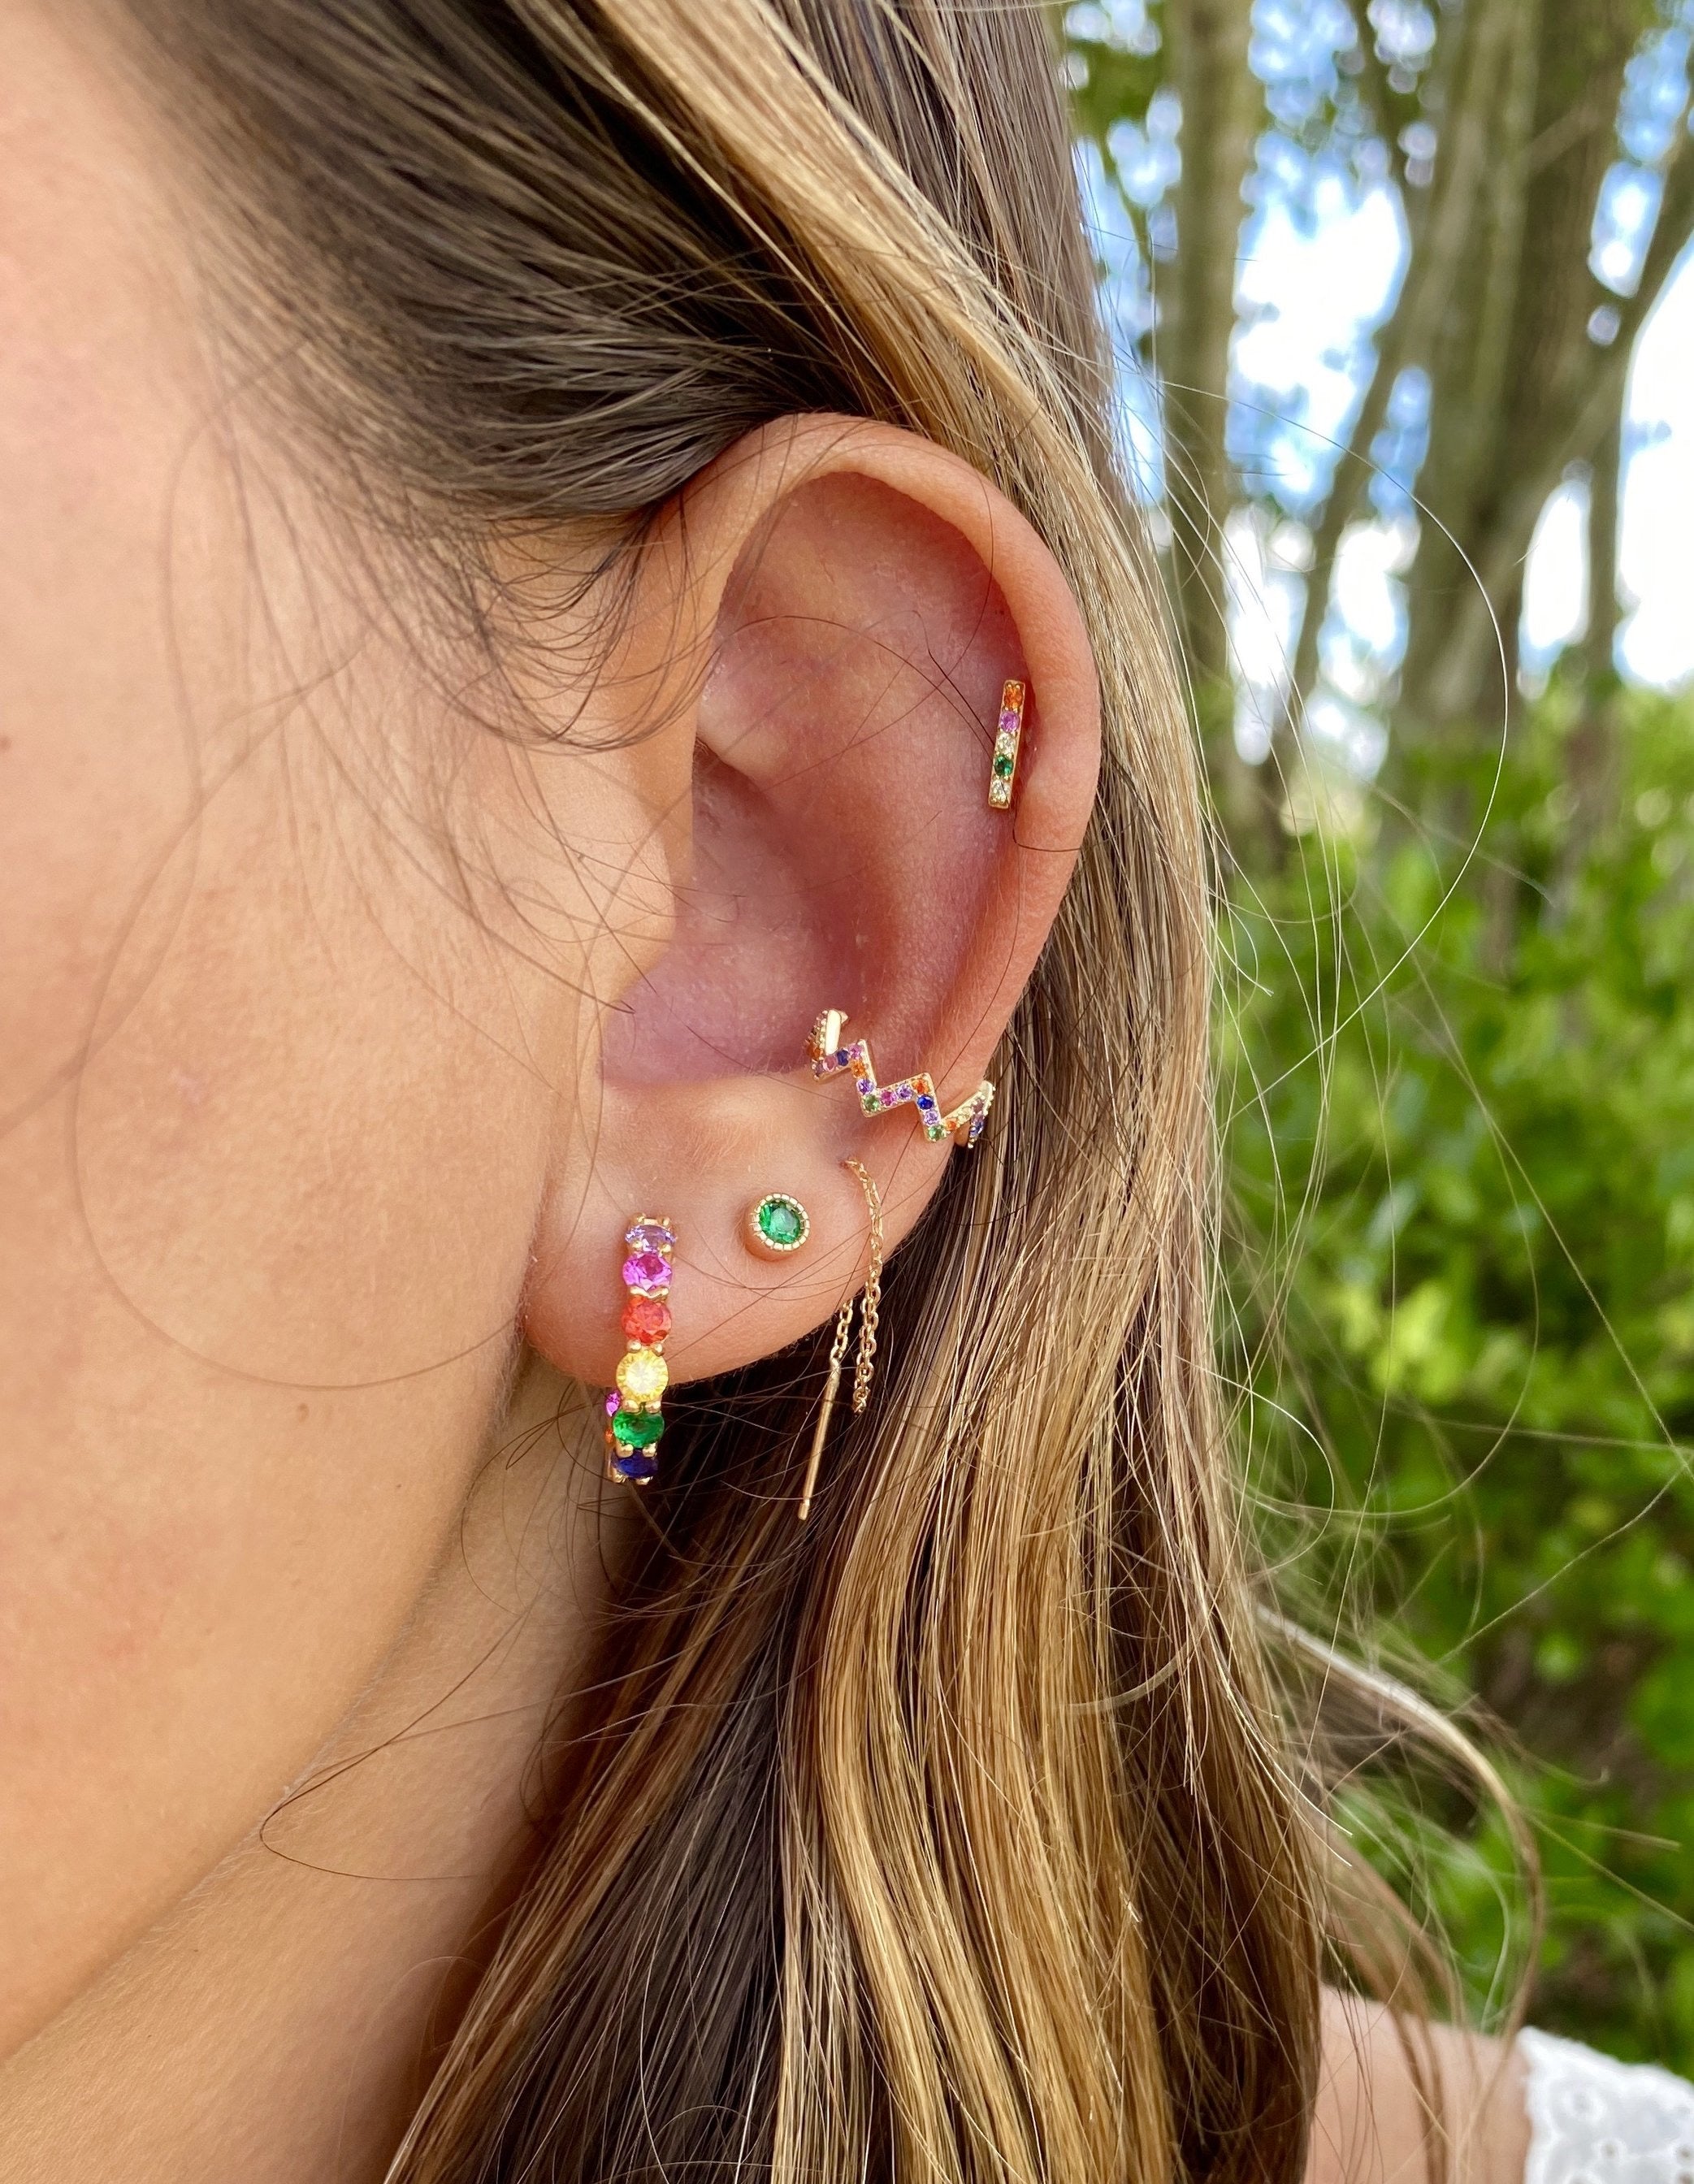 ZIG ZAG chain ear cuff earrings